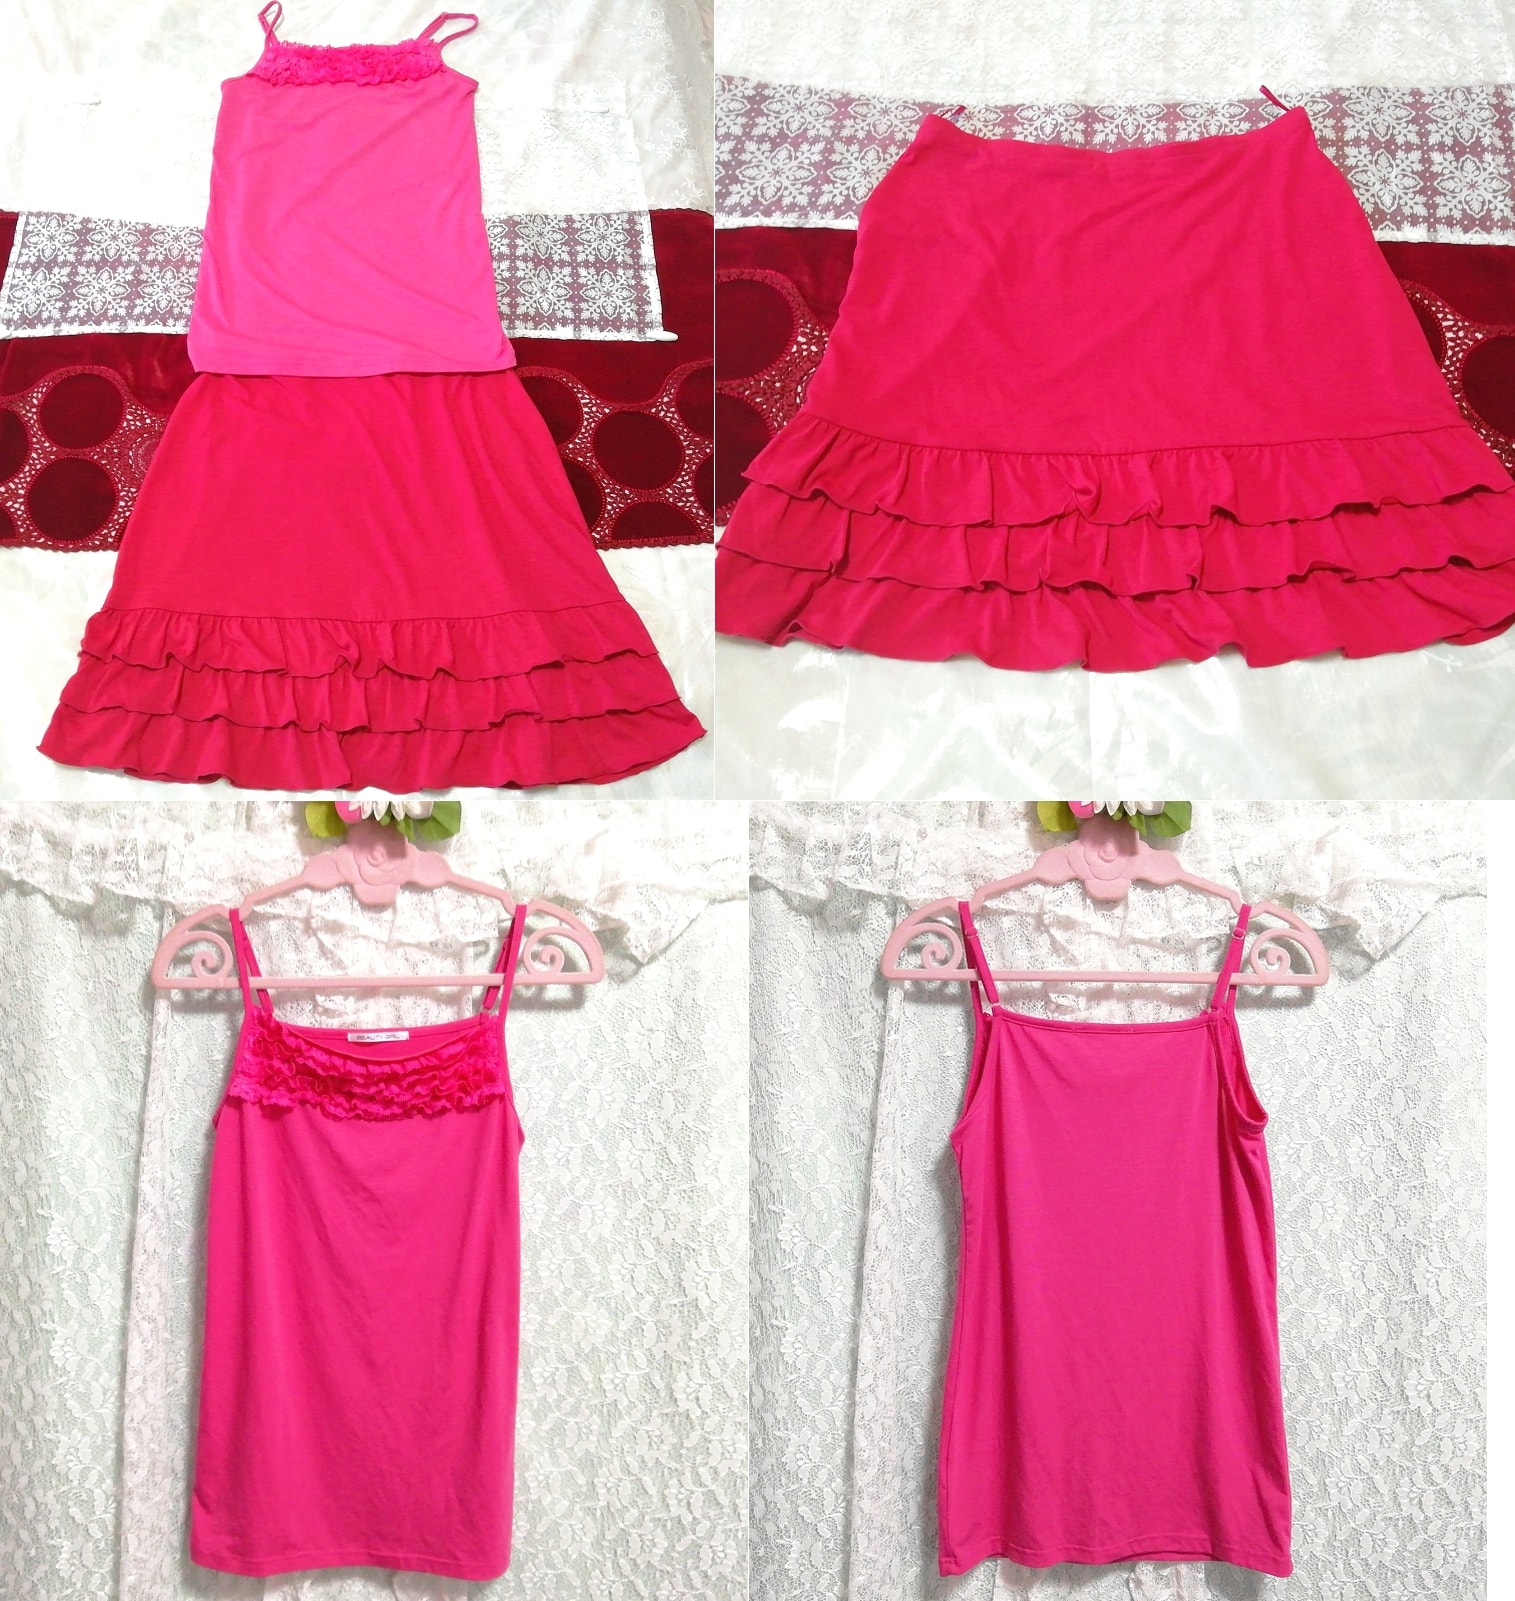 Chemise de nuit déshabillée caraco en dentelle rose mini-jupe à volants rouge 2P, mode, mode féminine, vêtement de nuit, pyjamas